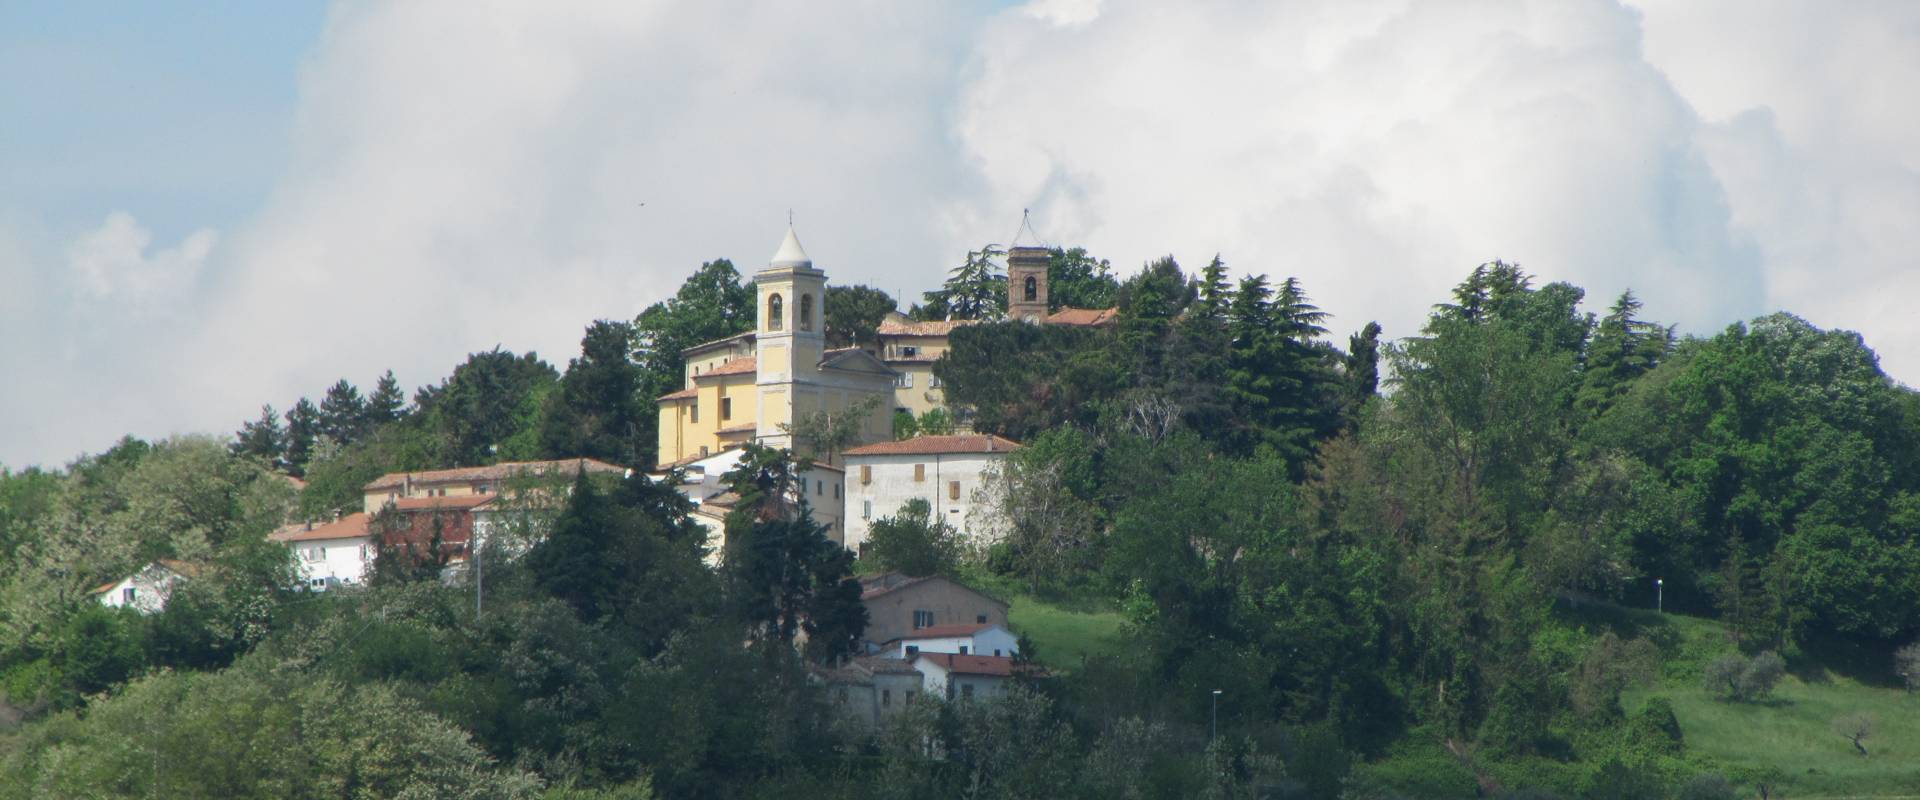 Monte Colombo e al centro la Chiesa di S. Giovanni Battista foto di Anna pazzaglia